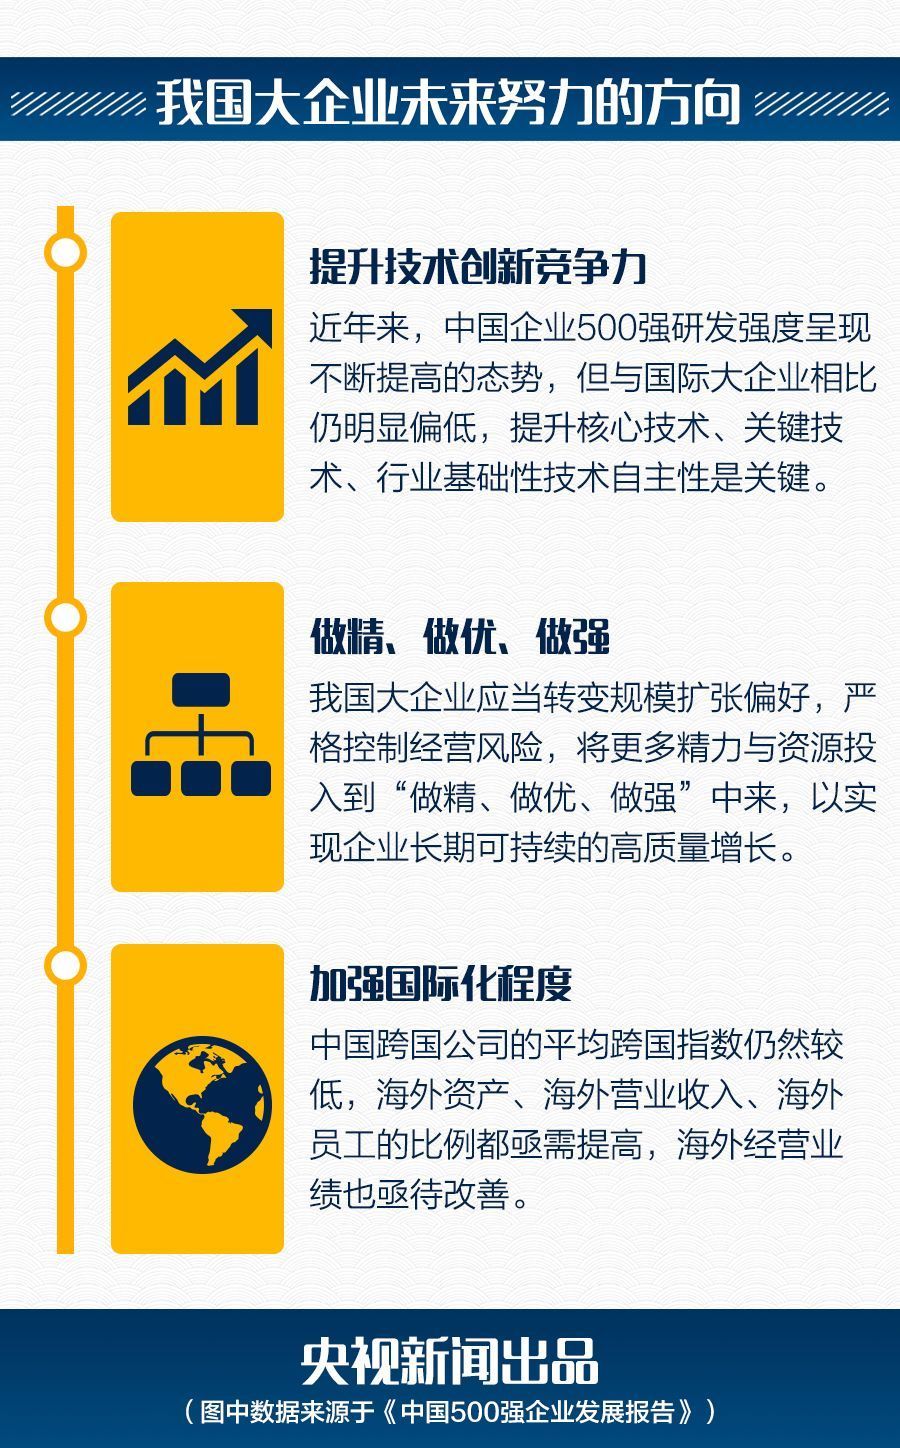 2018中国企业500强名单发布:国企263家+民企